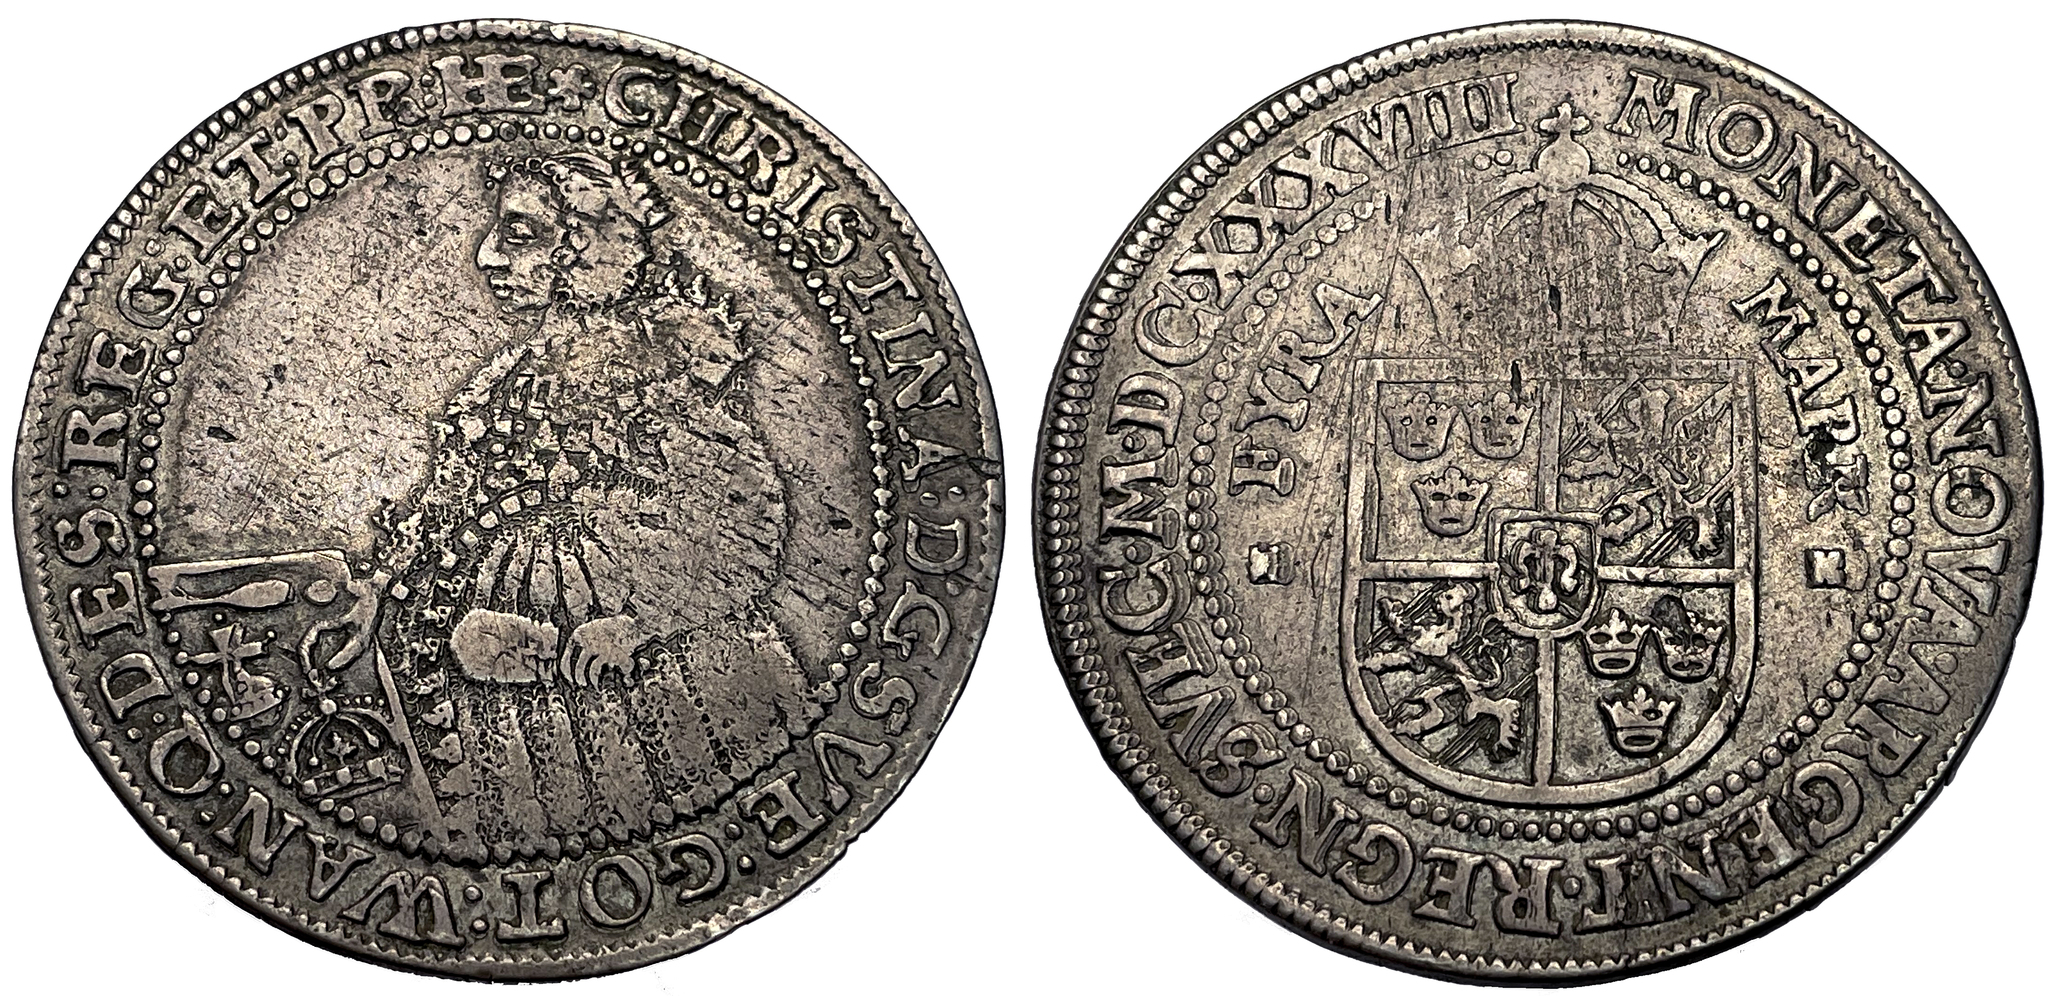 Kristina, 4 Mark 1638 med stor krage - Sällsynt